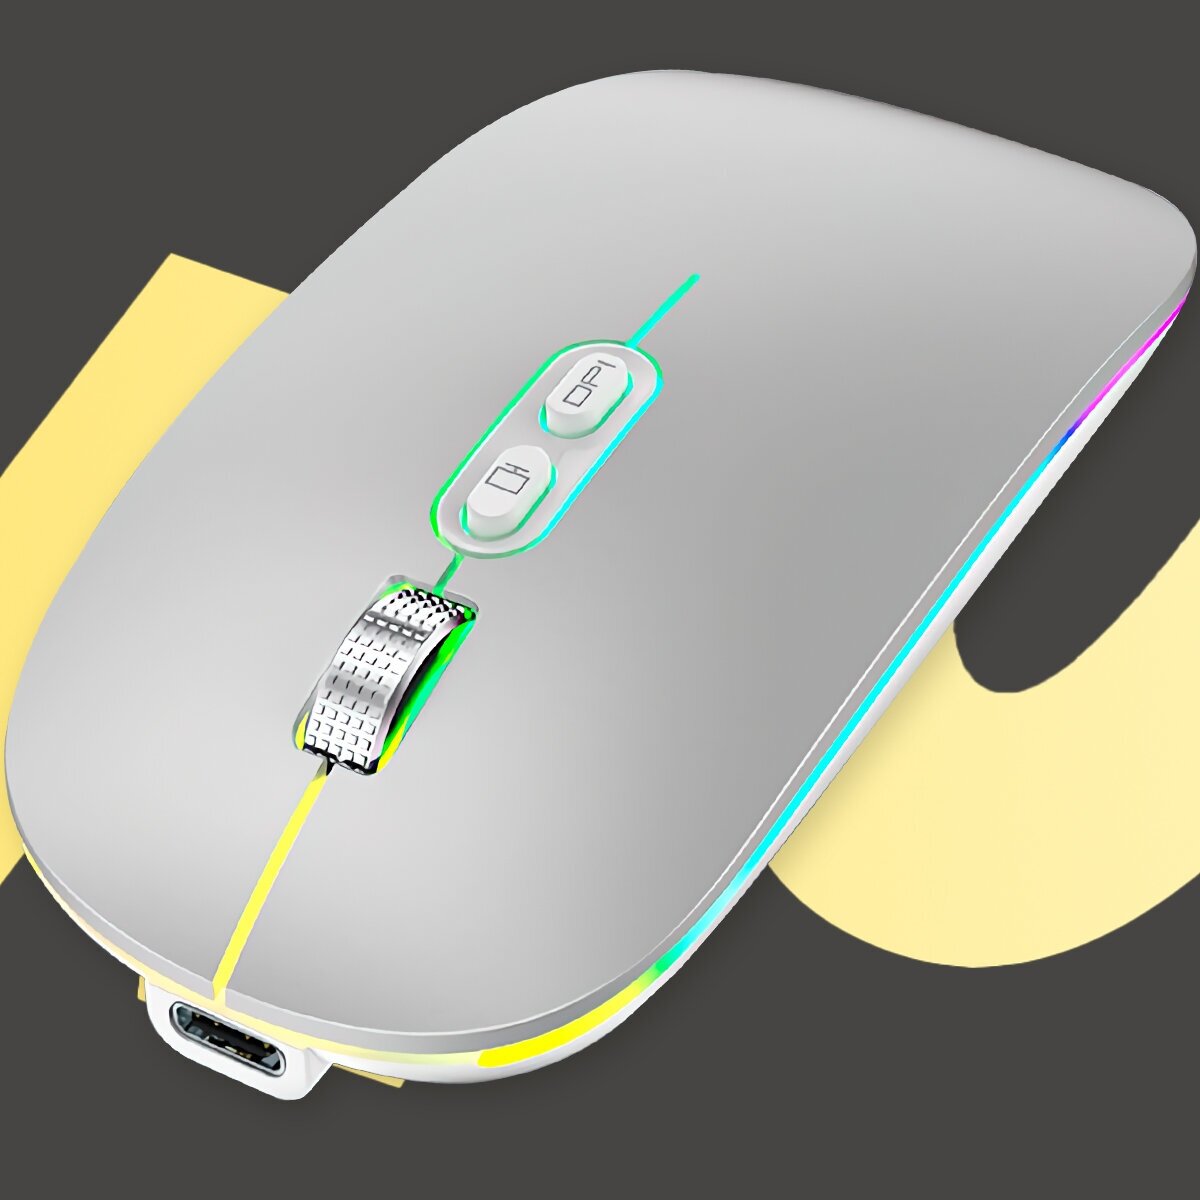 Мышь беспроводная М103 Bluetooth 51 + Nano USB Зарядка Type-C Компьютерная мышка с RGB подсветкой бесшумная мышка с Аккумулятором